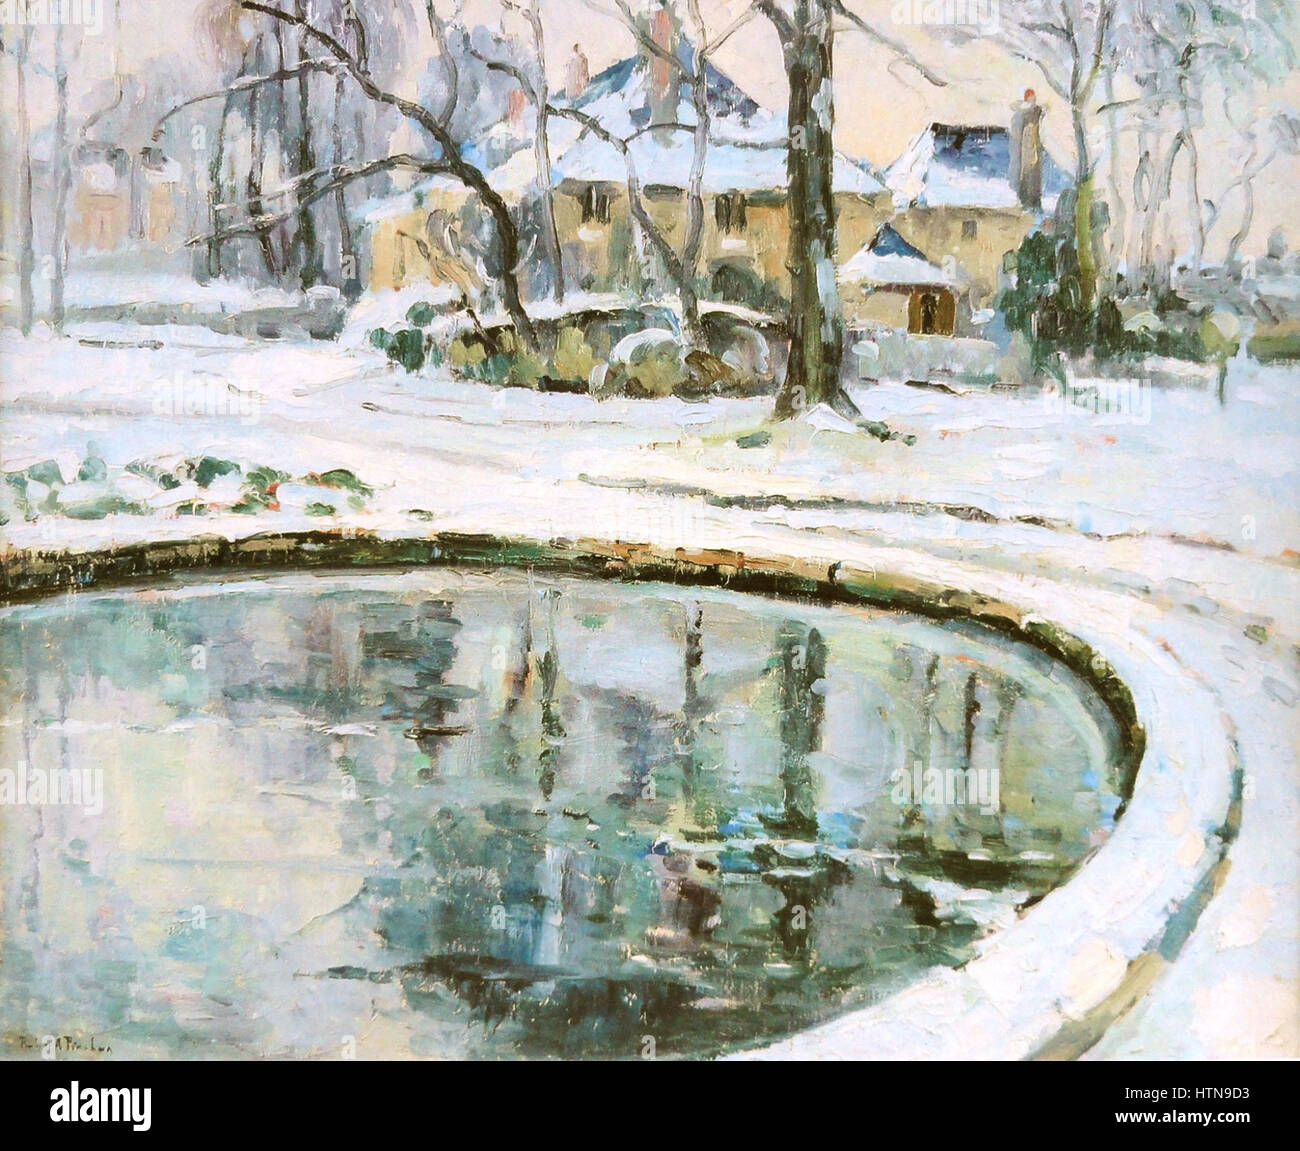 Robert Antoine Pinchon, le bassin, neige, huile sur toile, 50 x 60 cm Banque D'Images